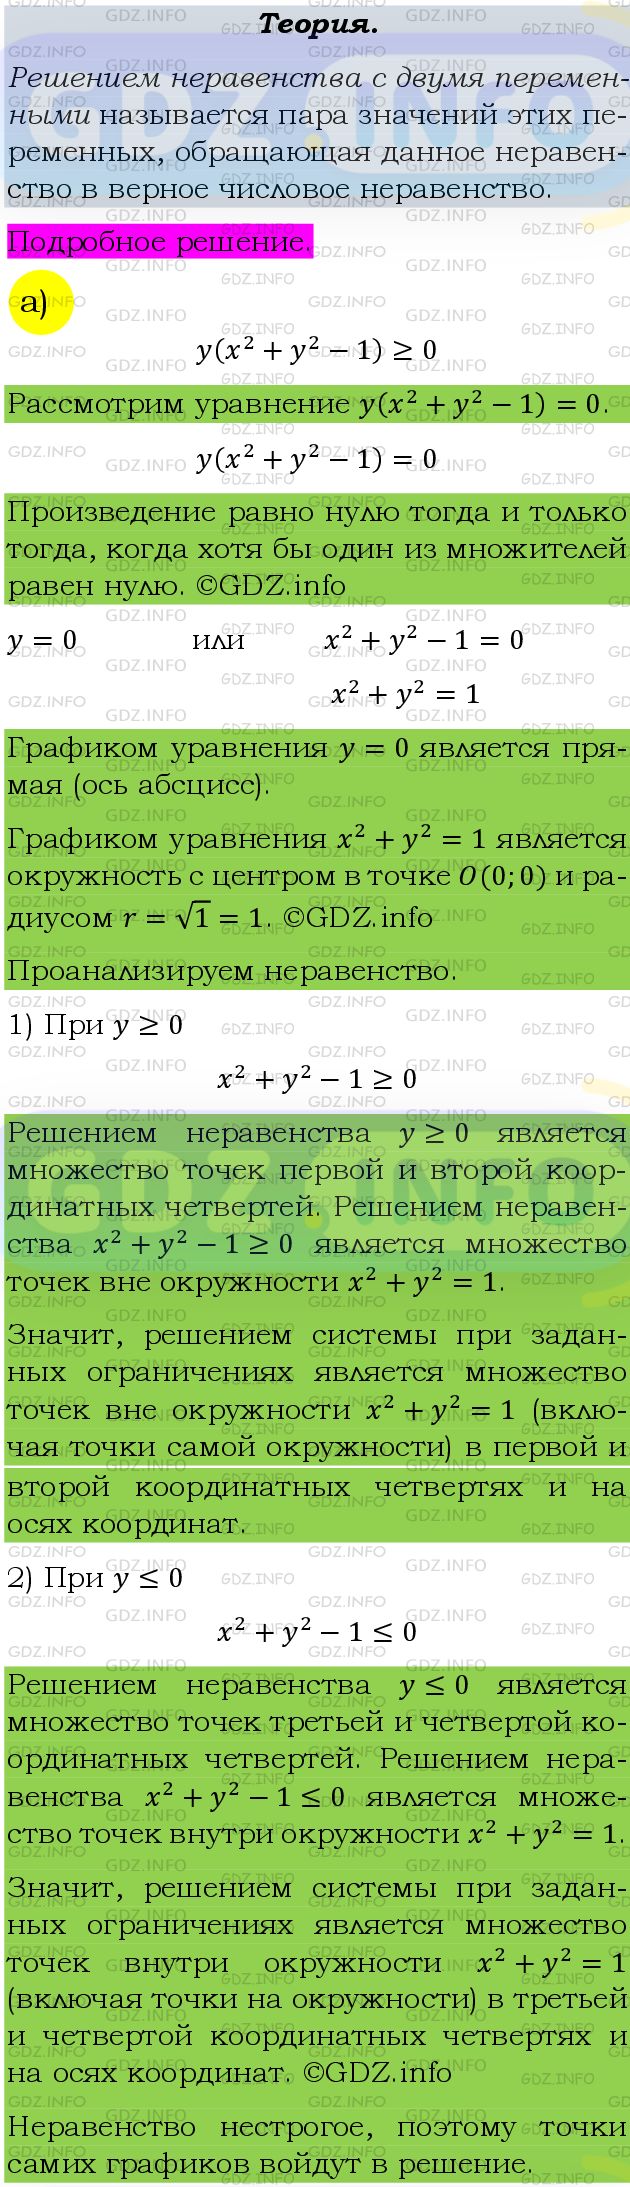 Фото подробного решения: Номер задания №524 из ГДЗ по Алгебре 9 класс: Макарычев Ю.Н.